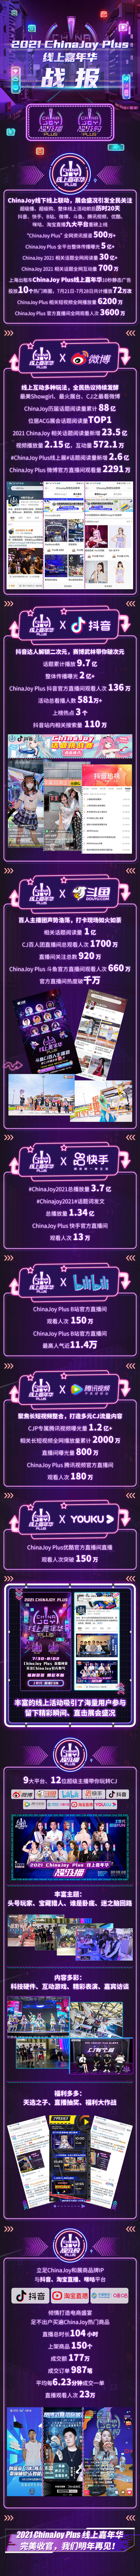 2021ChinaJoy Plus线上嘉年华战报亮眼！超级播+超级购，双线联动、盛况空前！ 